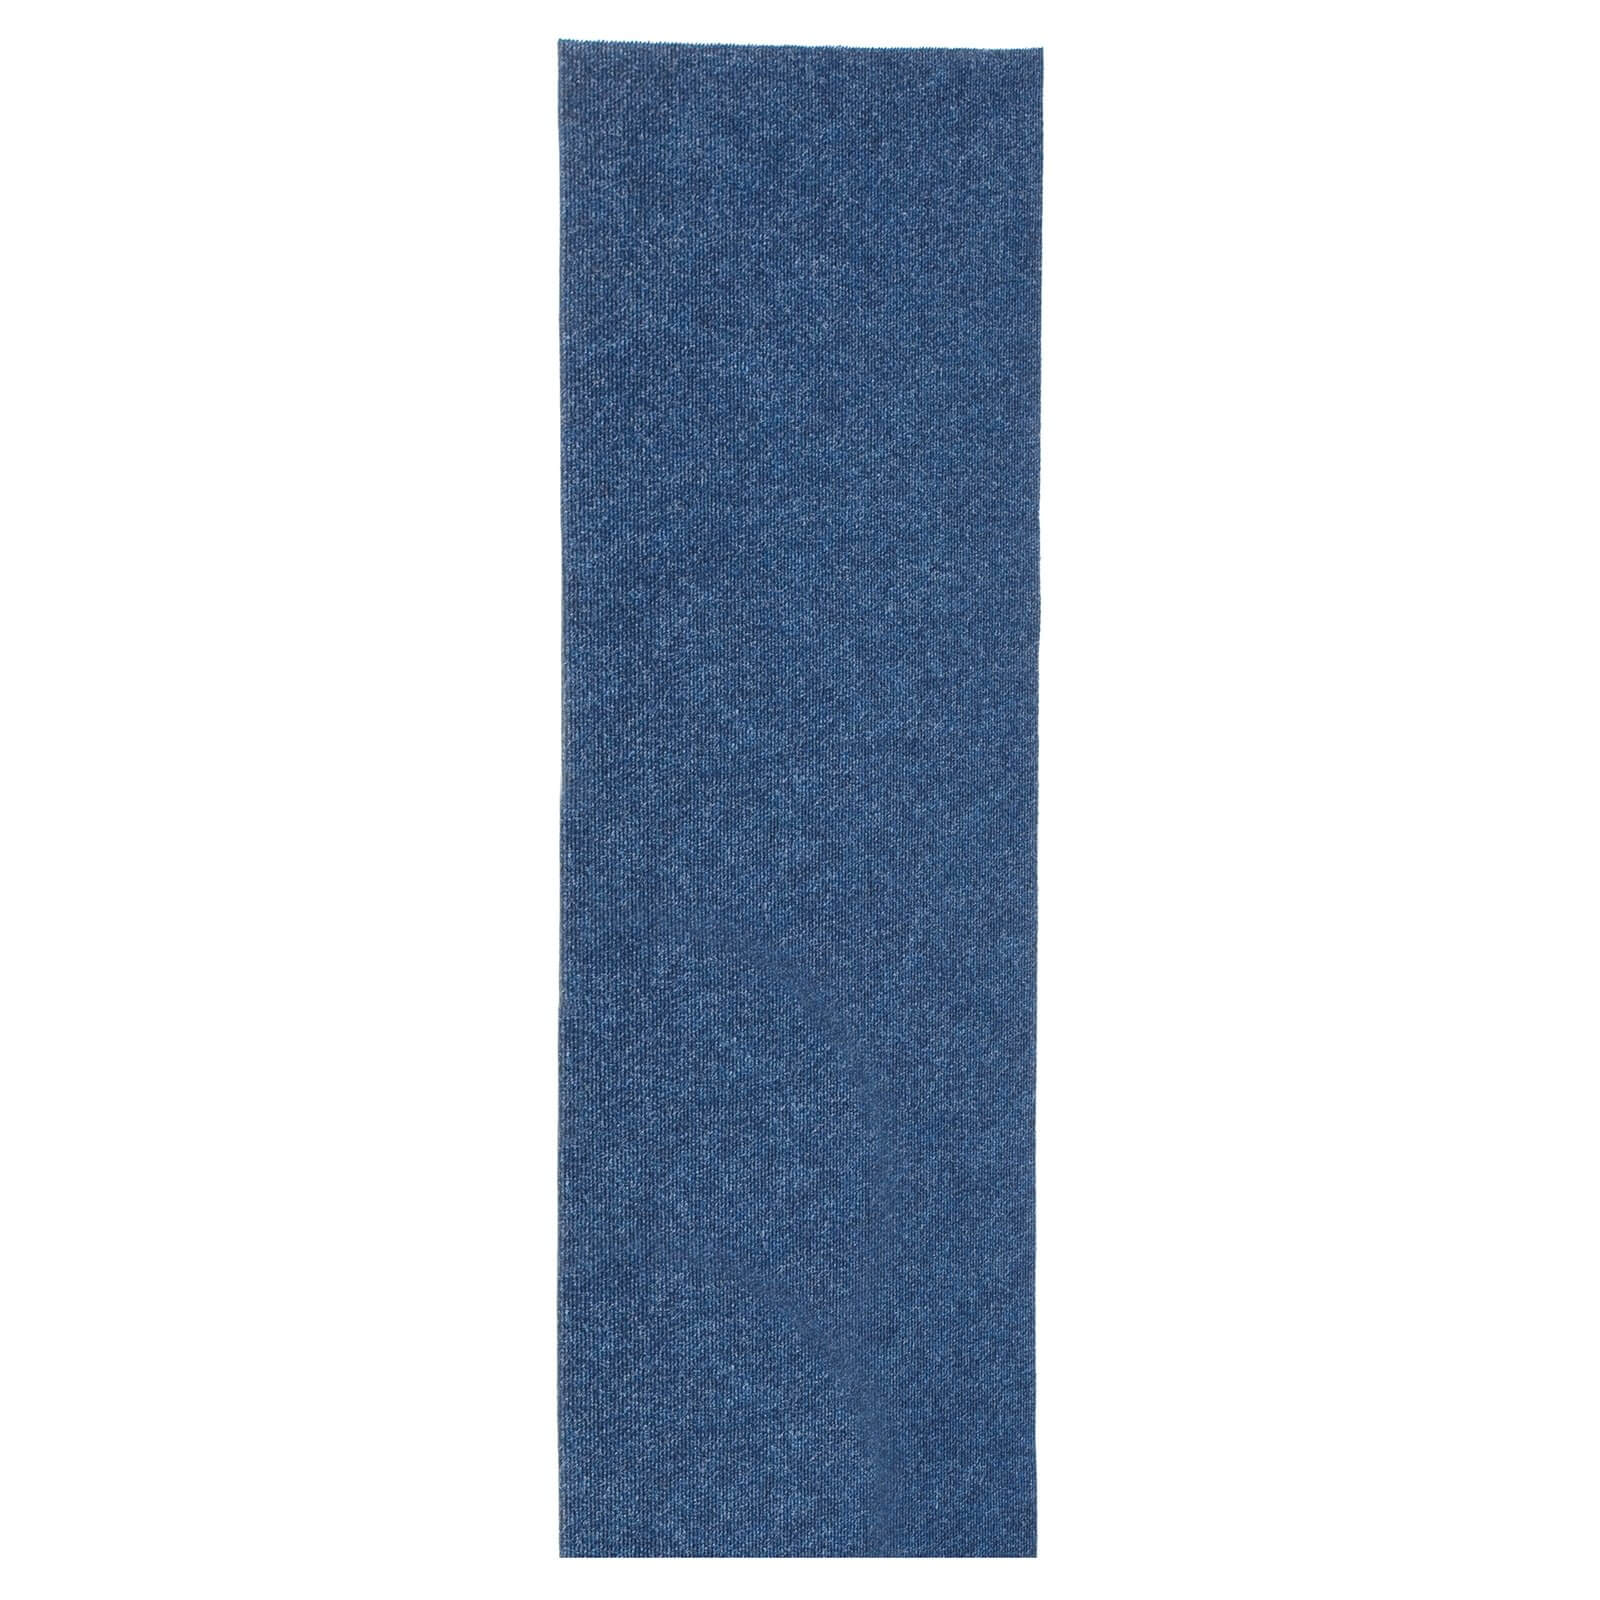 Ribbed Runner - Blue - 66x183cm